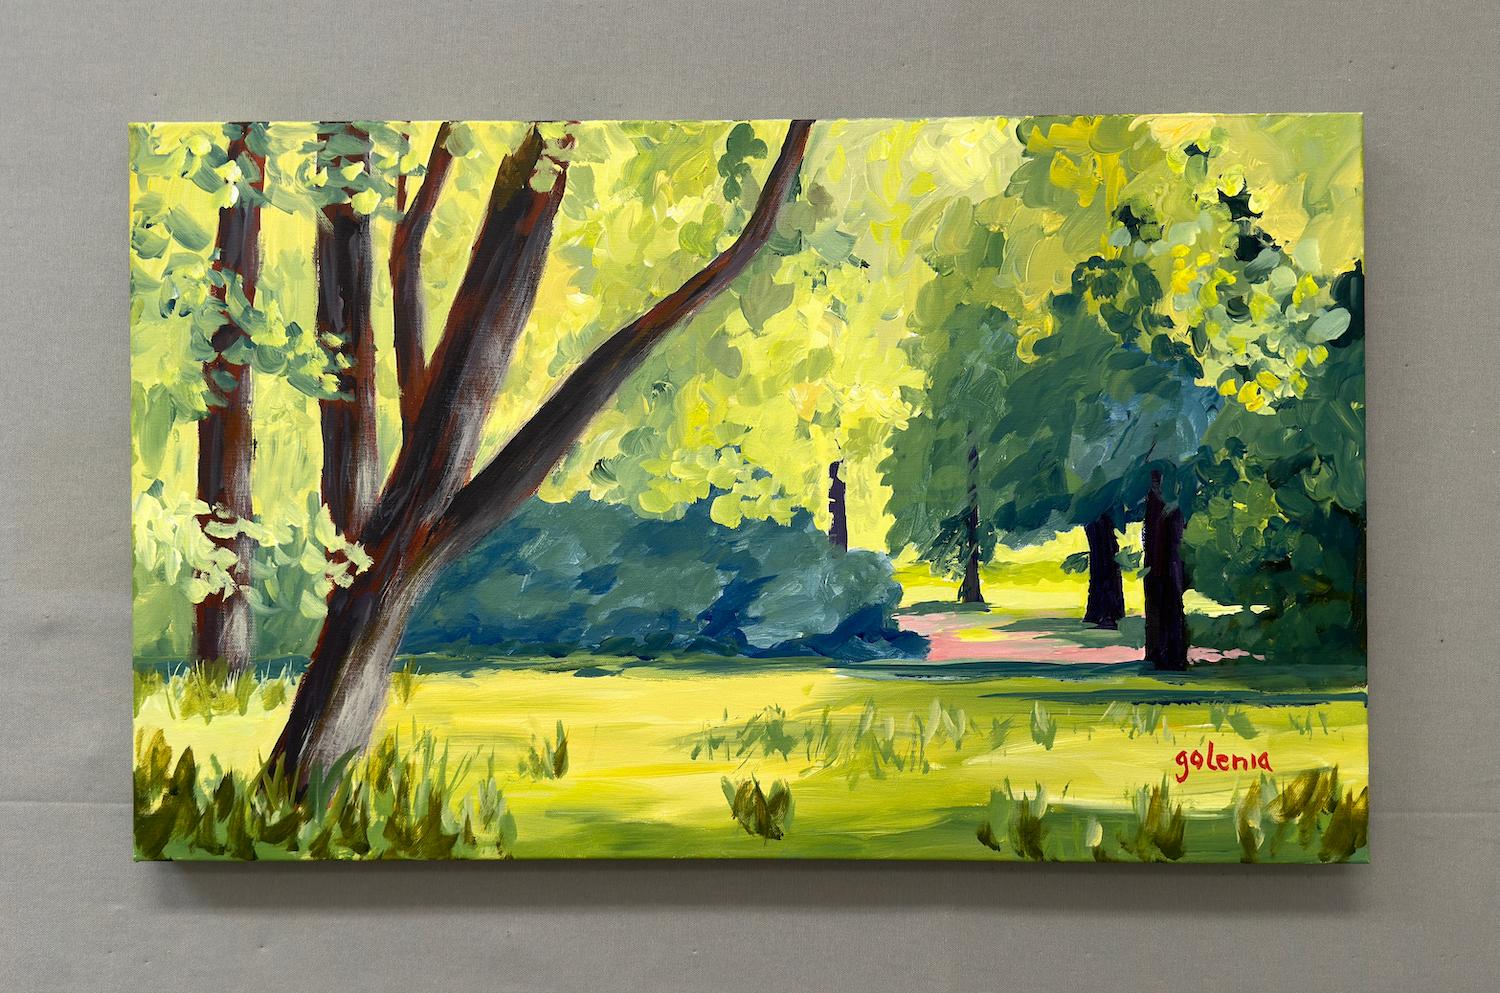 <p>Kommentare des Künstlers<br>Das Gemälde ist reich an Bäumen und bietet einen visuellen Zufluchtsort. Die Mischung aus warmen gelben Grüntönen und kühleren blauen Grüntönen ruft ein Gefühl der Frische hervor, das das Auge beruhigt. Weiche